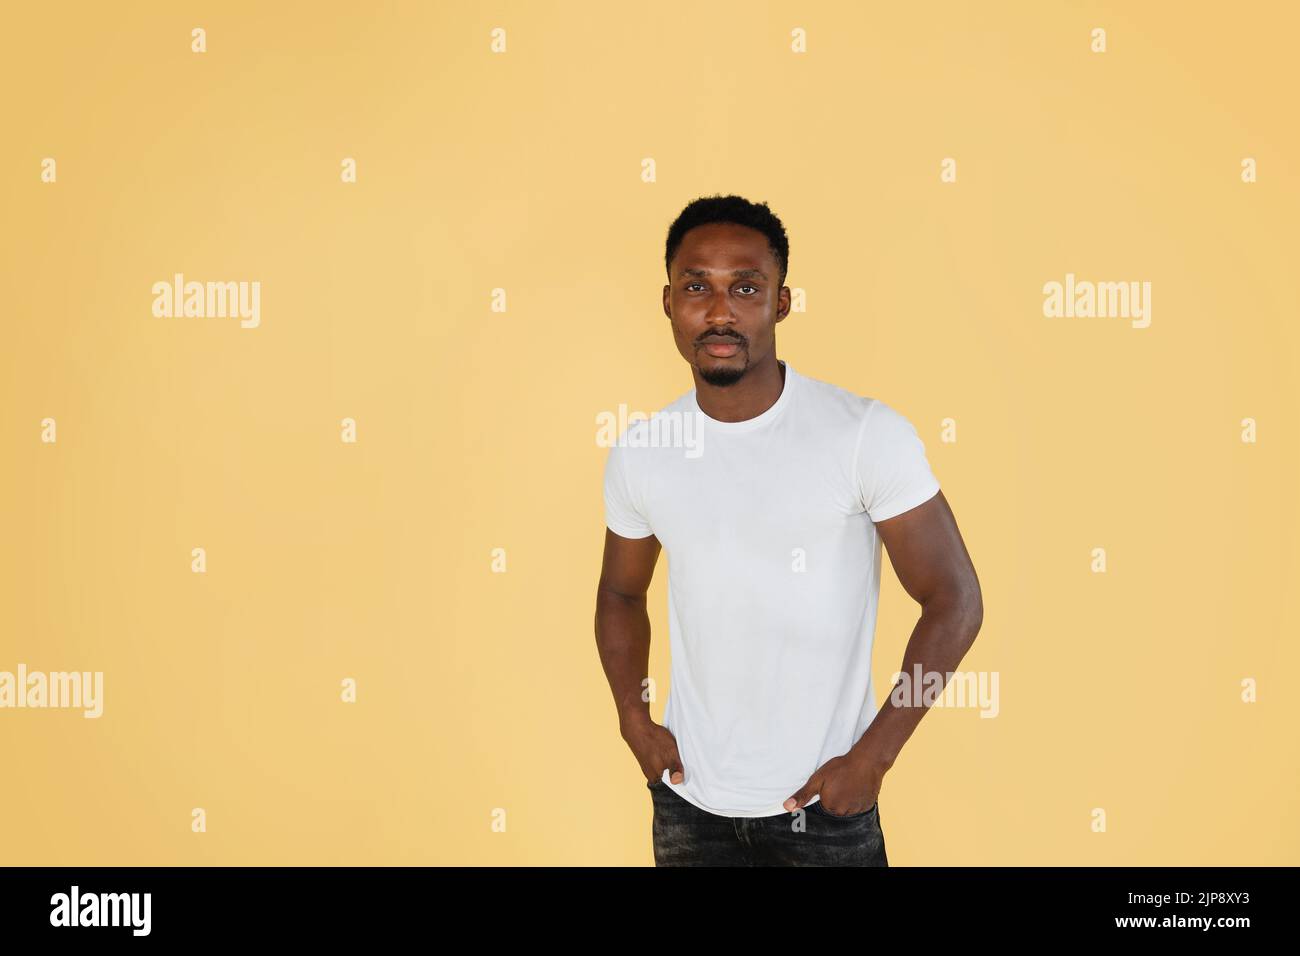 Portrait d'un jeune homme afro-américain attrayant, portant un t-shirt blanc, posant à l'appareil photo sur fond jaune pastel. People, races concept. Banque D'Images